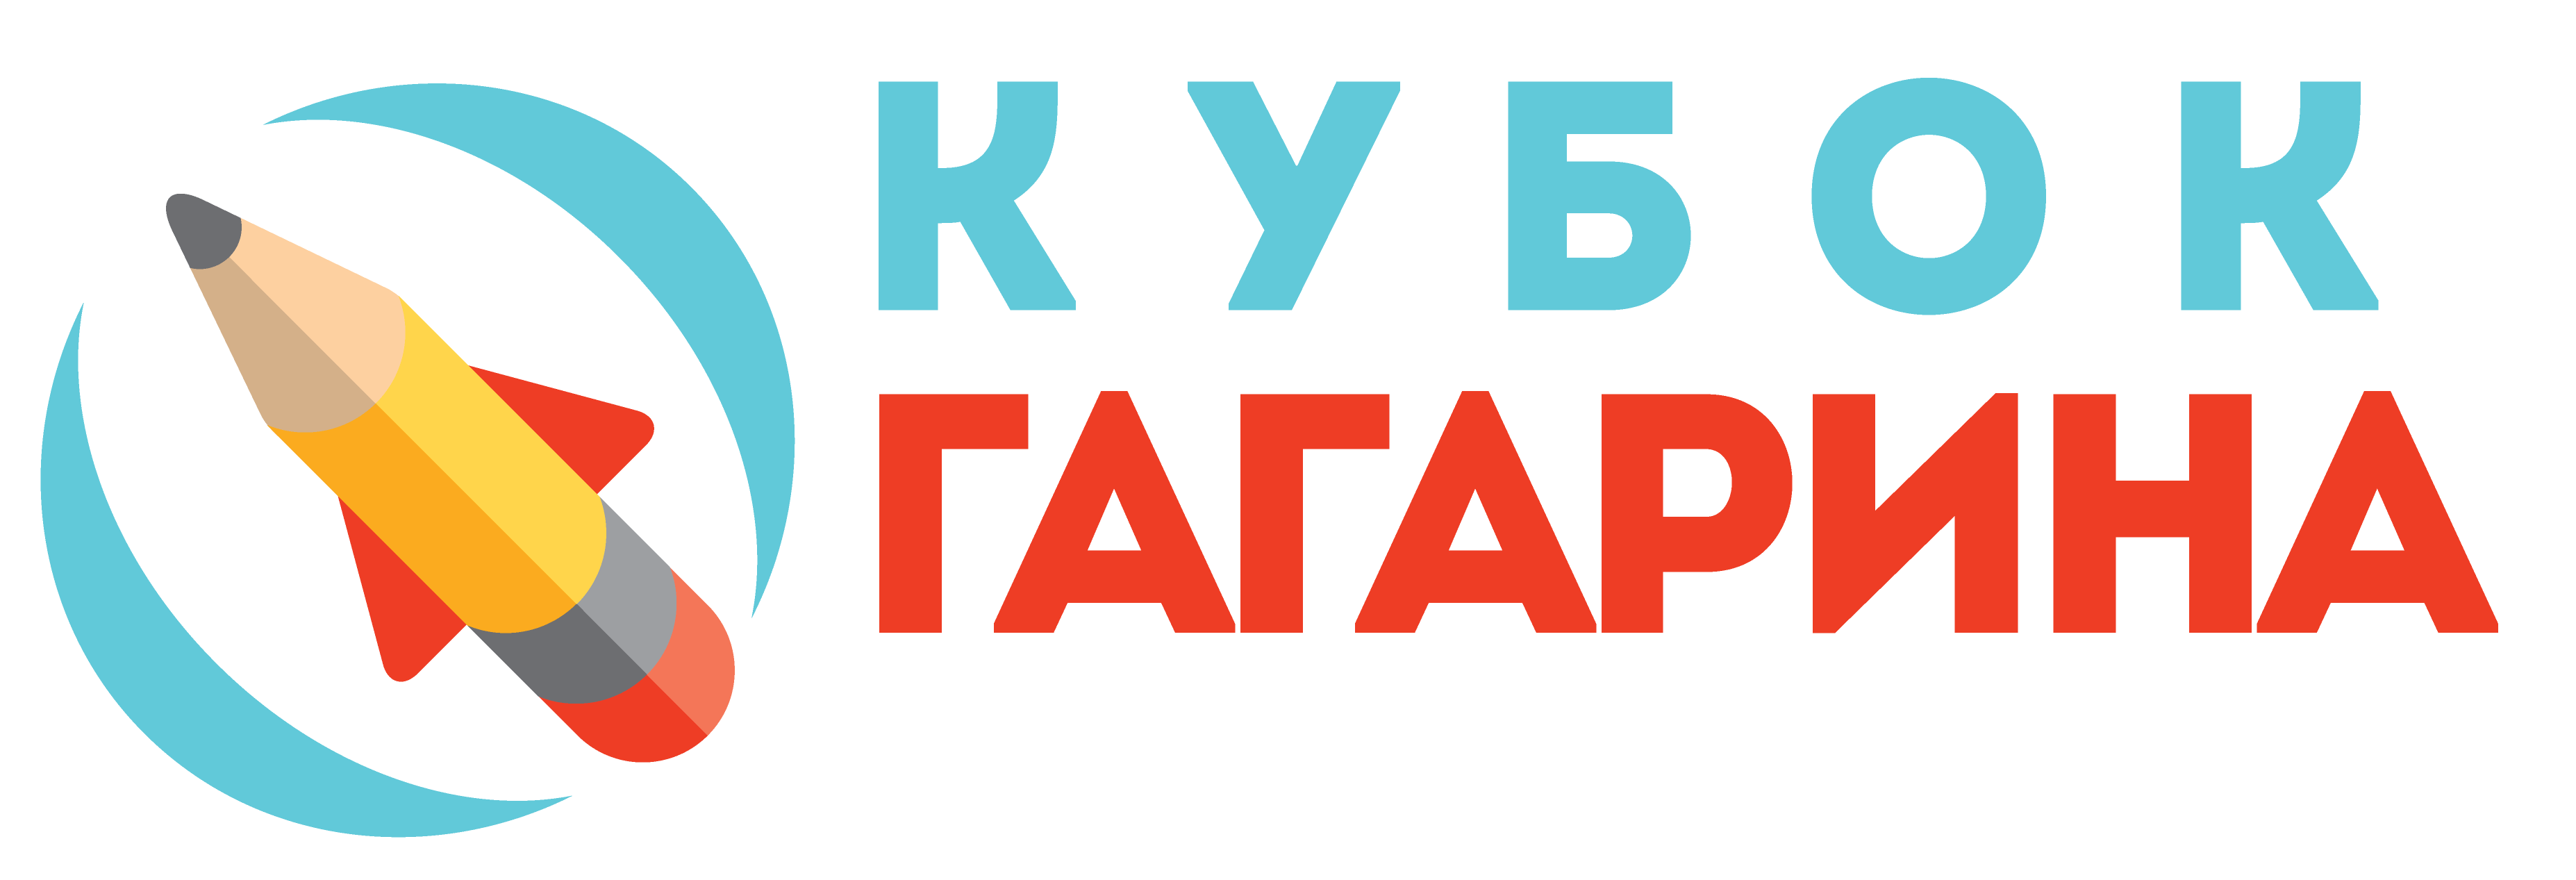 Задания кубок гагарина олимпиада по русскому языку 3 класс